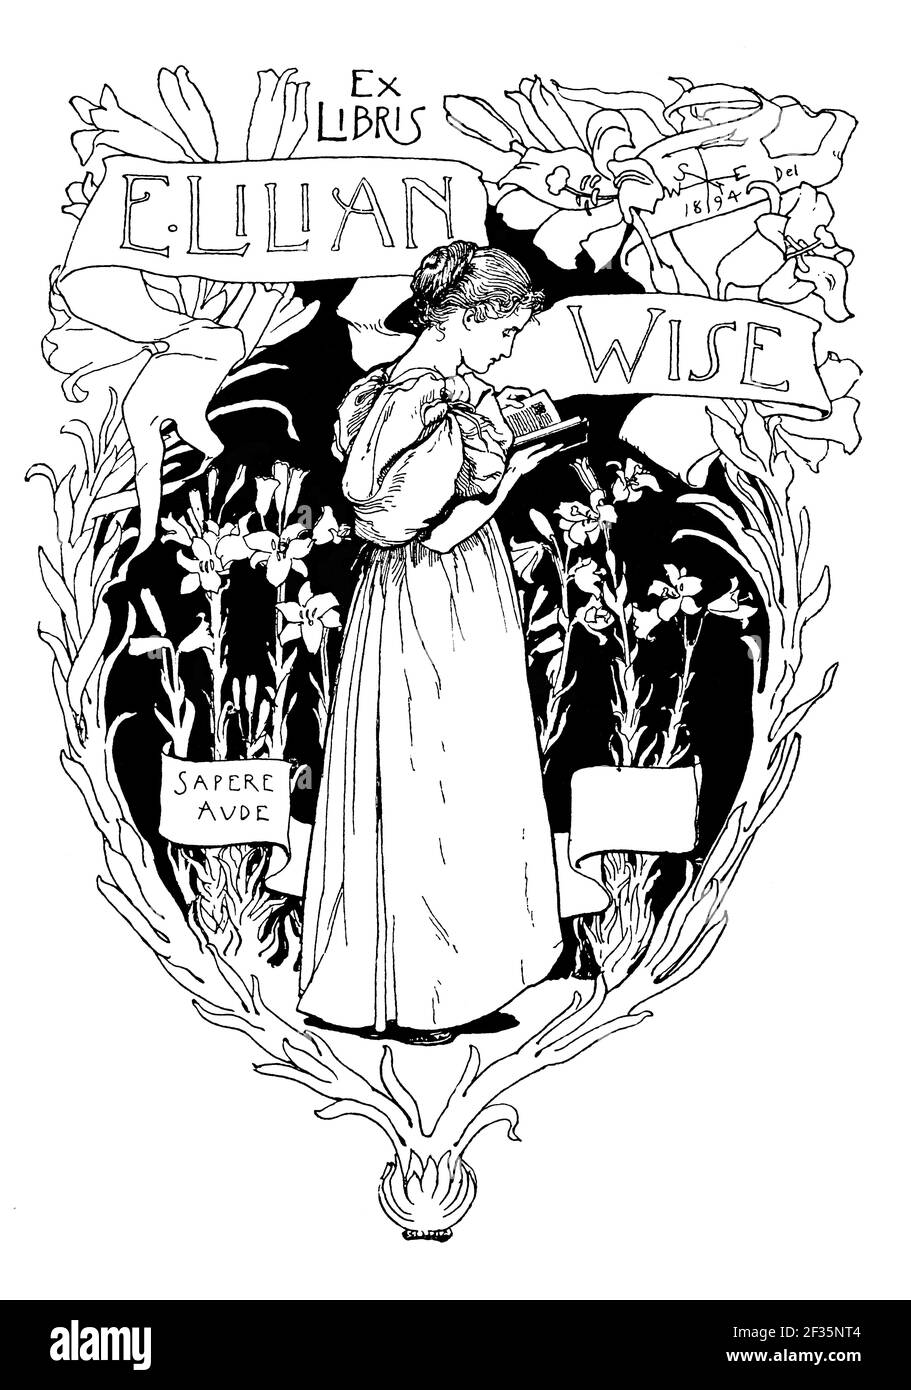 1894 bibliothèque avec la devise latine 'Sapere Aude' Dare to Know, conçue pour E Lillian Wise par Walter J West, illustrateur britannique né à Hull Banque D'Images